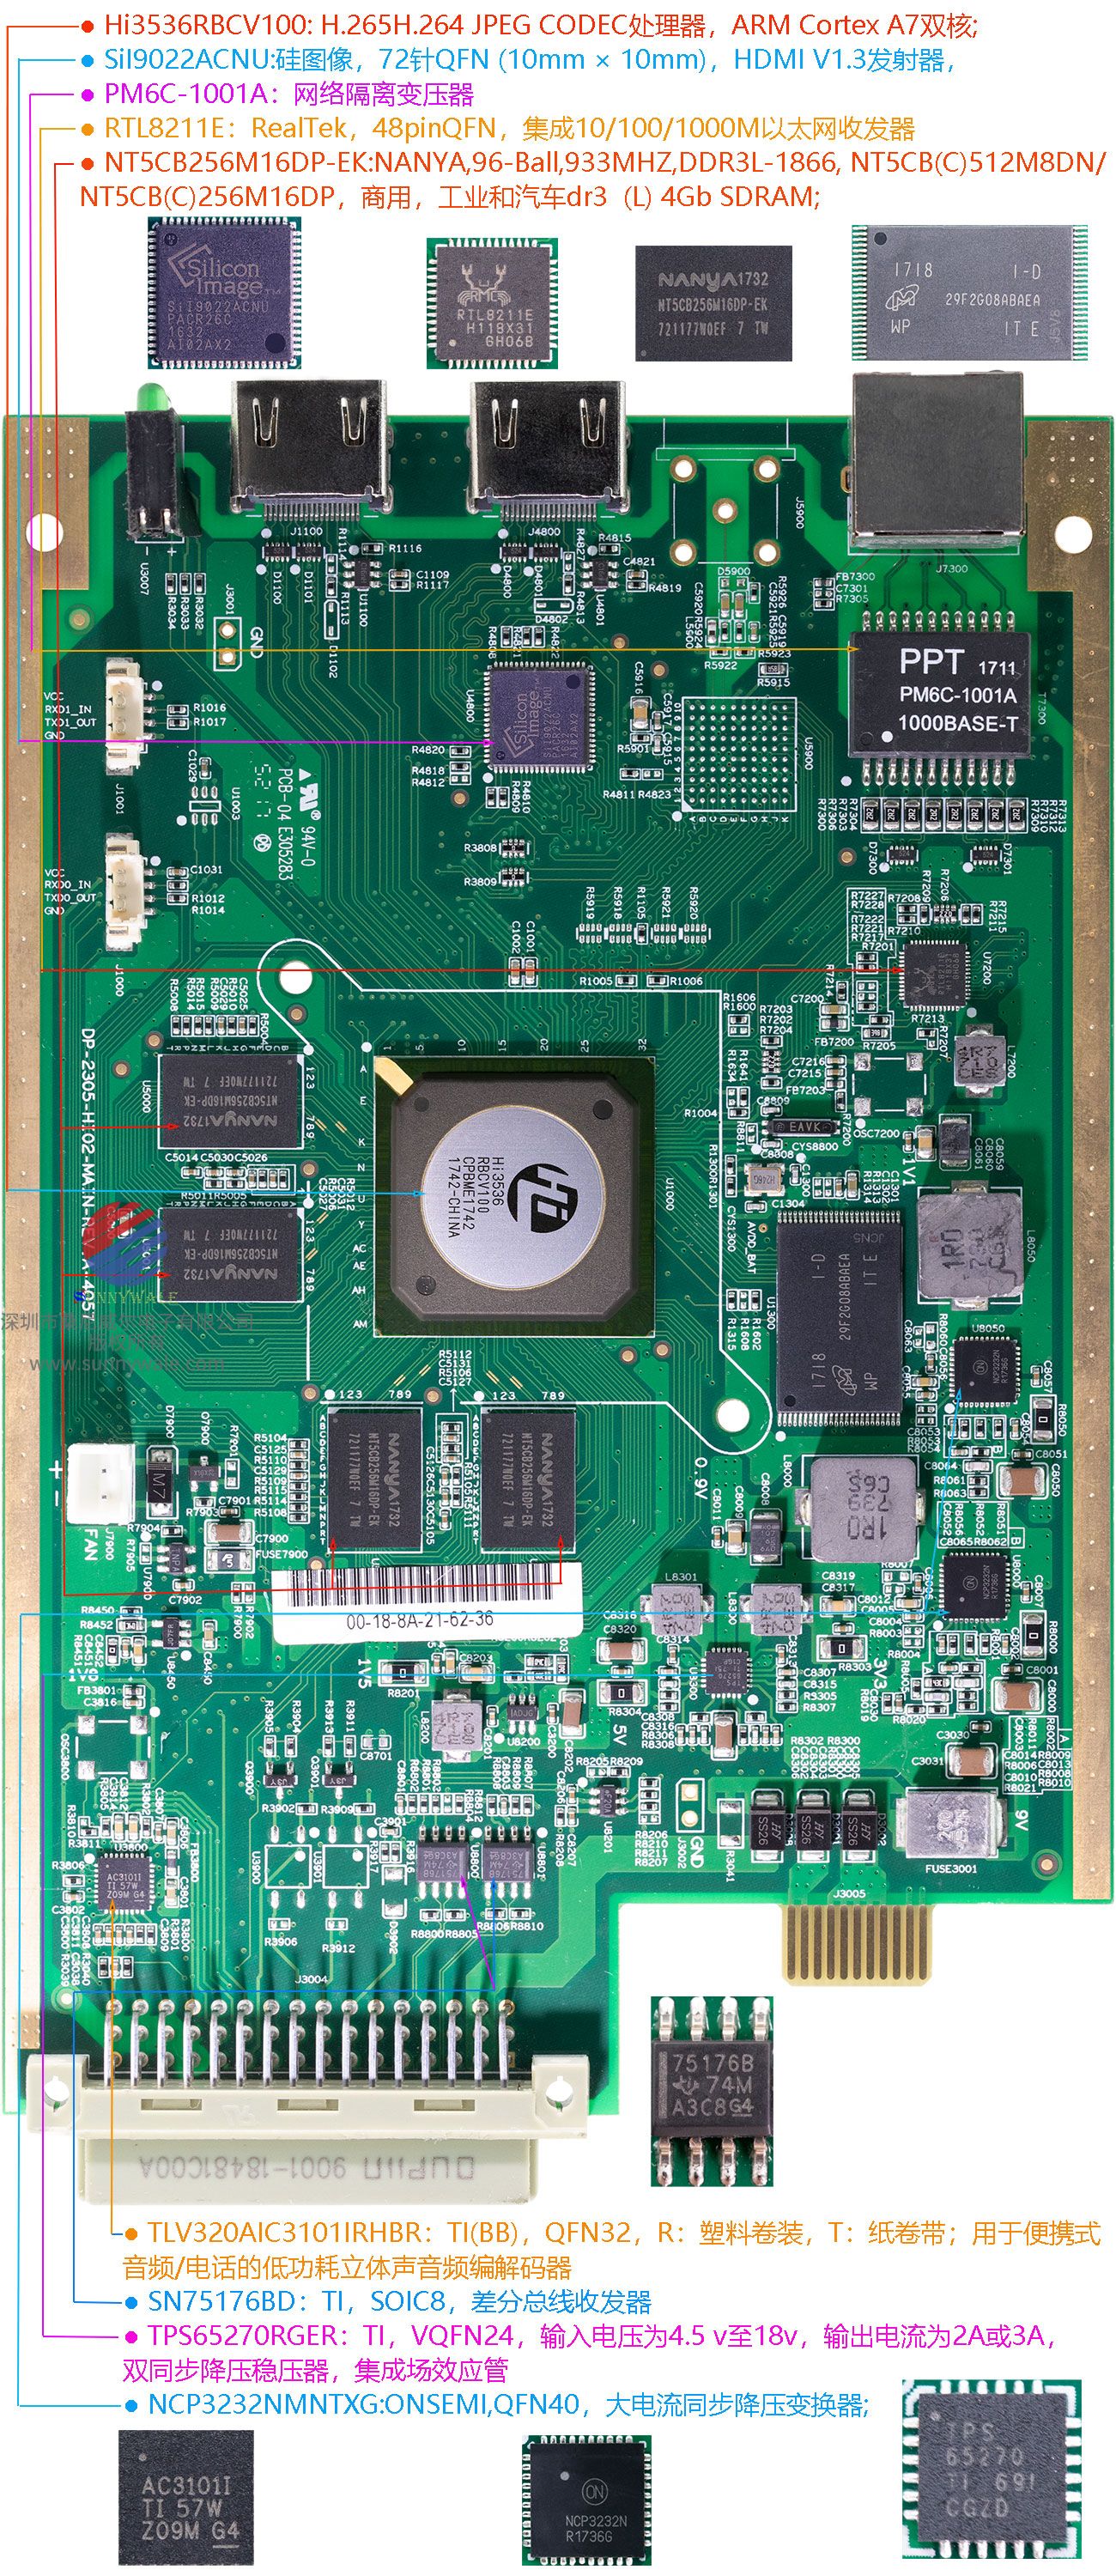 美国Infinova监控视频解码板，安防视频解码板，海思Hi3536CV100处理器， H.265、H.264解码编码器，多路高清视频实时编码解码处理，DP-2305-HI02-MAIN-REV.A-4057，监控主板，视频解压版，监控编码模组，2路HDMI输出视频解码板